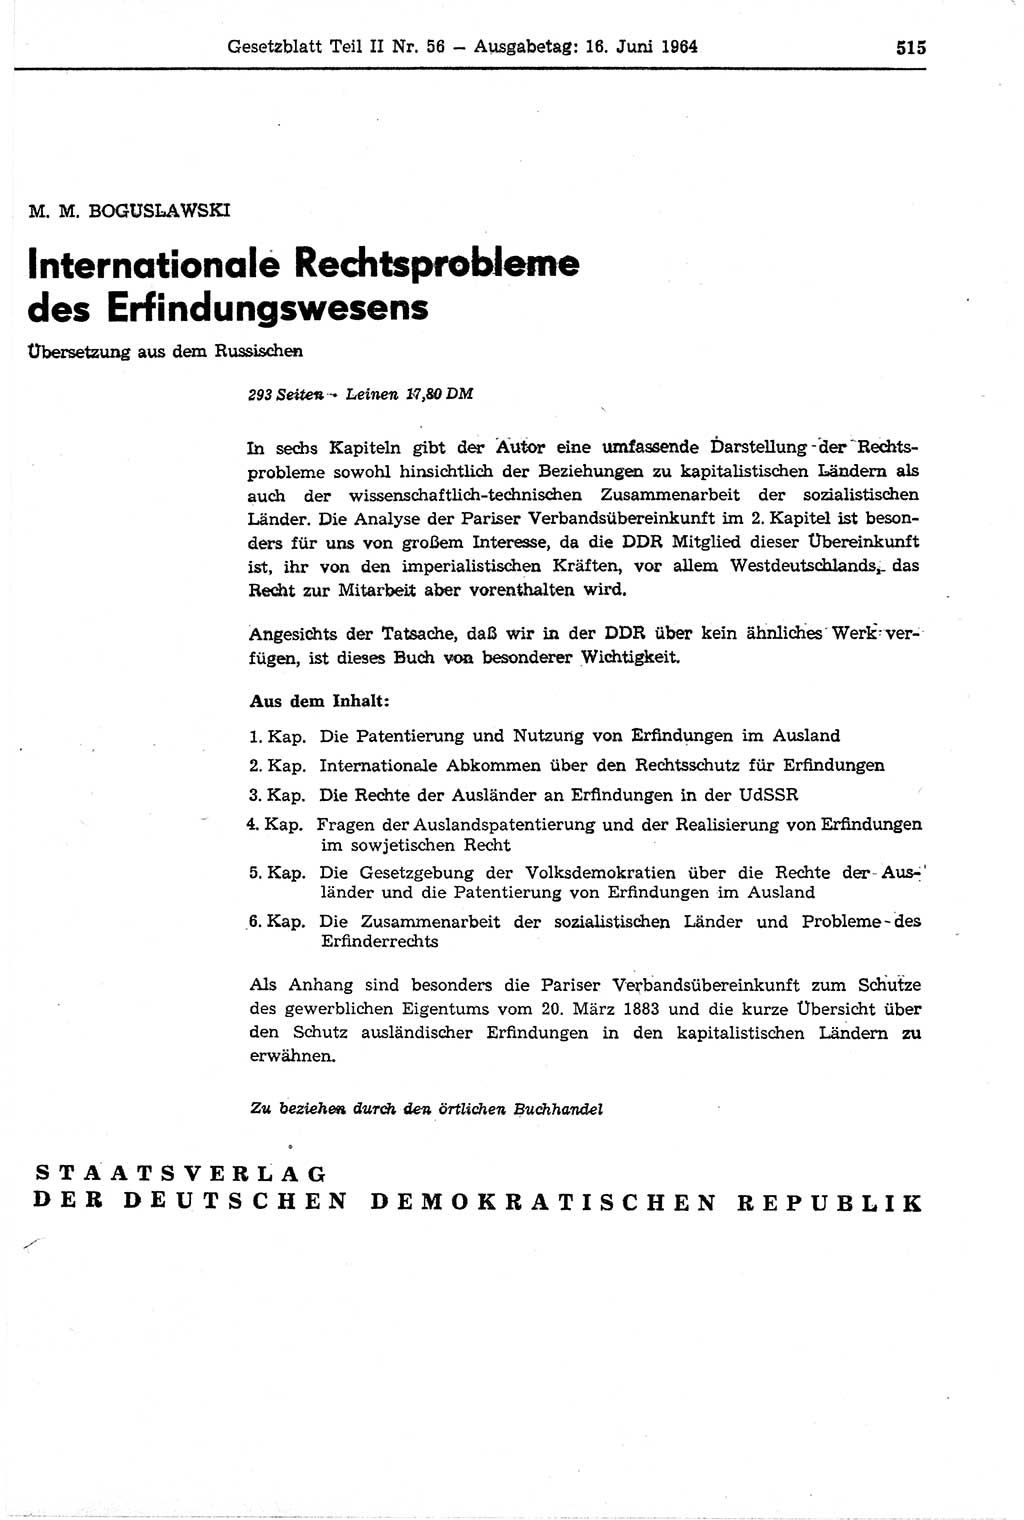 Gesetzblatt (GBl.) der Deutschen Demokratischen Republik (DDR) Teil ⅠⅠ 1964, Seite 515 (GBl. DDR ⅠⅠ 1964, S. 515)